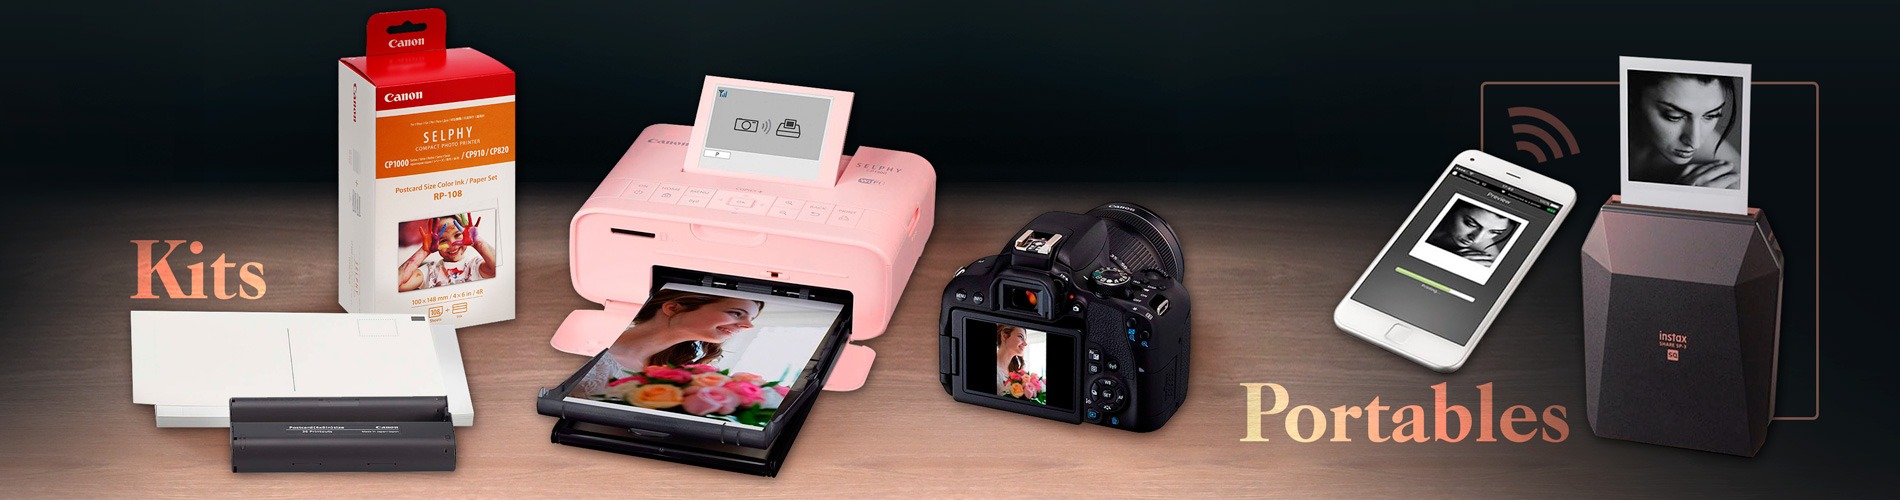 Quelles sont les meilleures imprimantes photo portables ? Notre